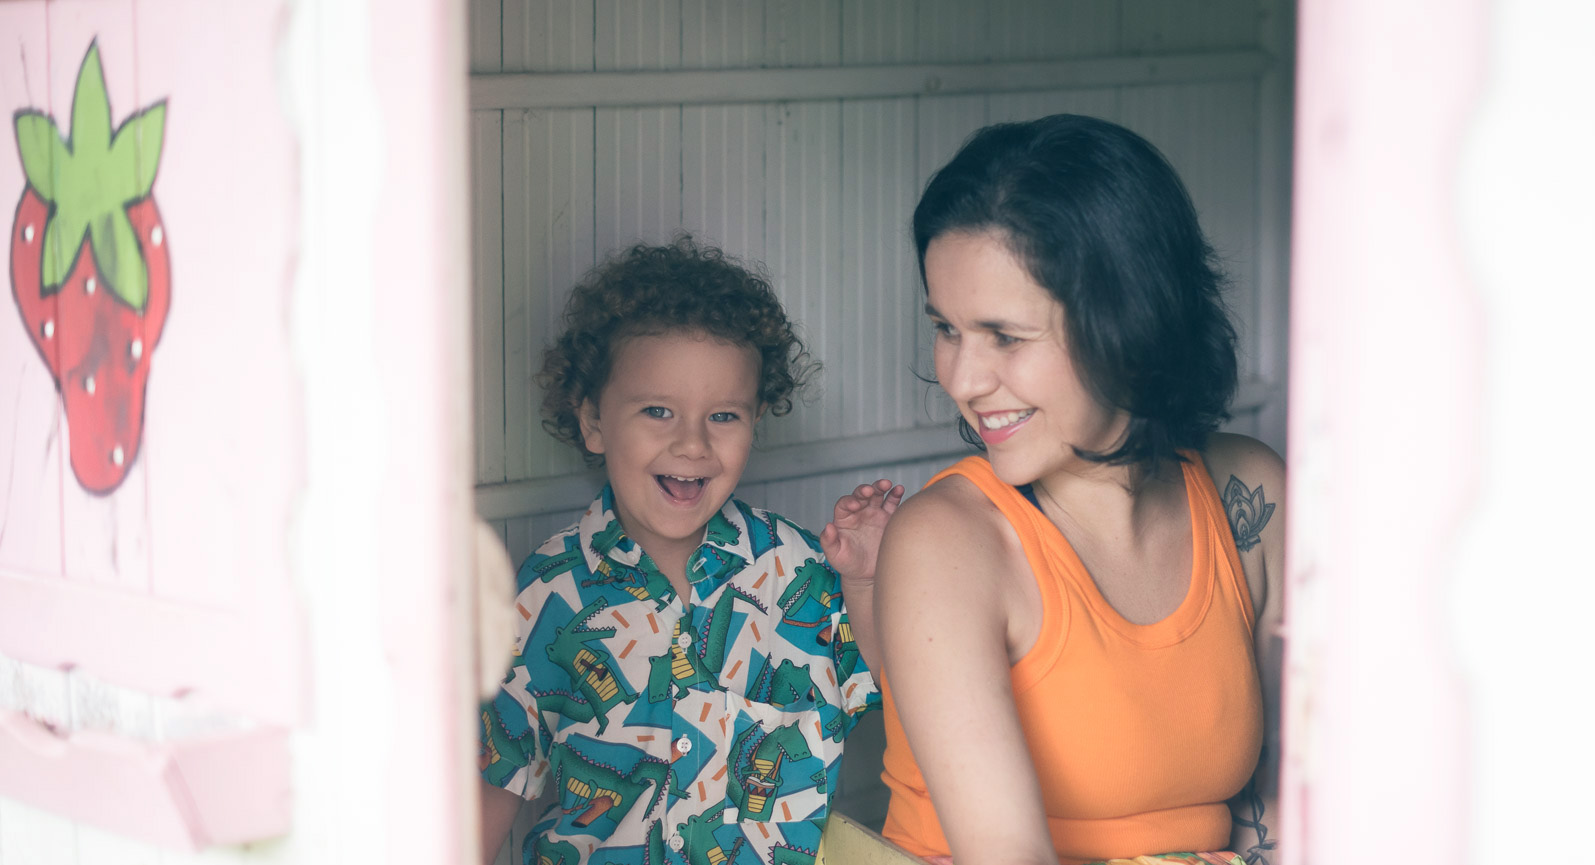 Marina Moscheta (Autora) sentada ao lado da sua criança dentro de uma casinha de madeira que possui um morango pintado do lado de fora.